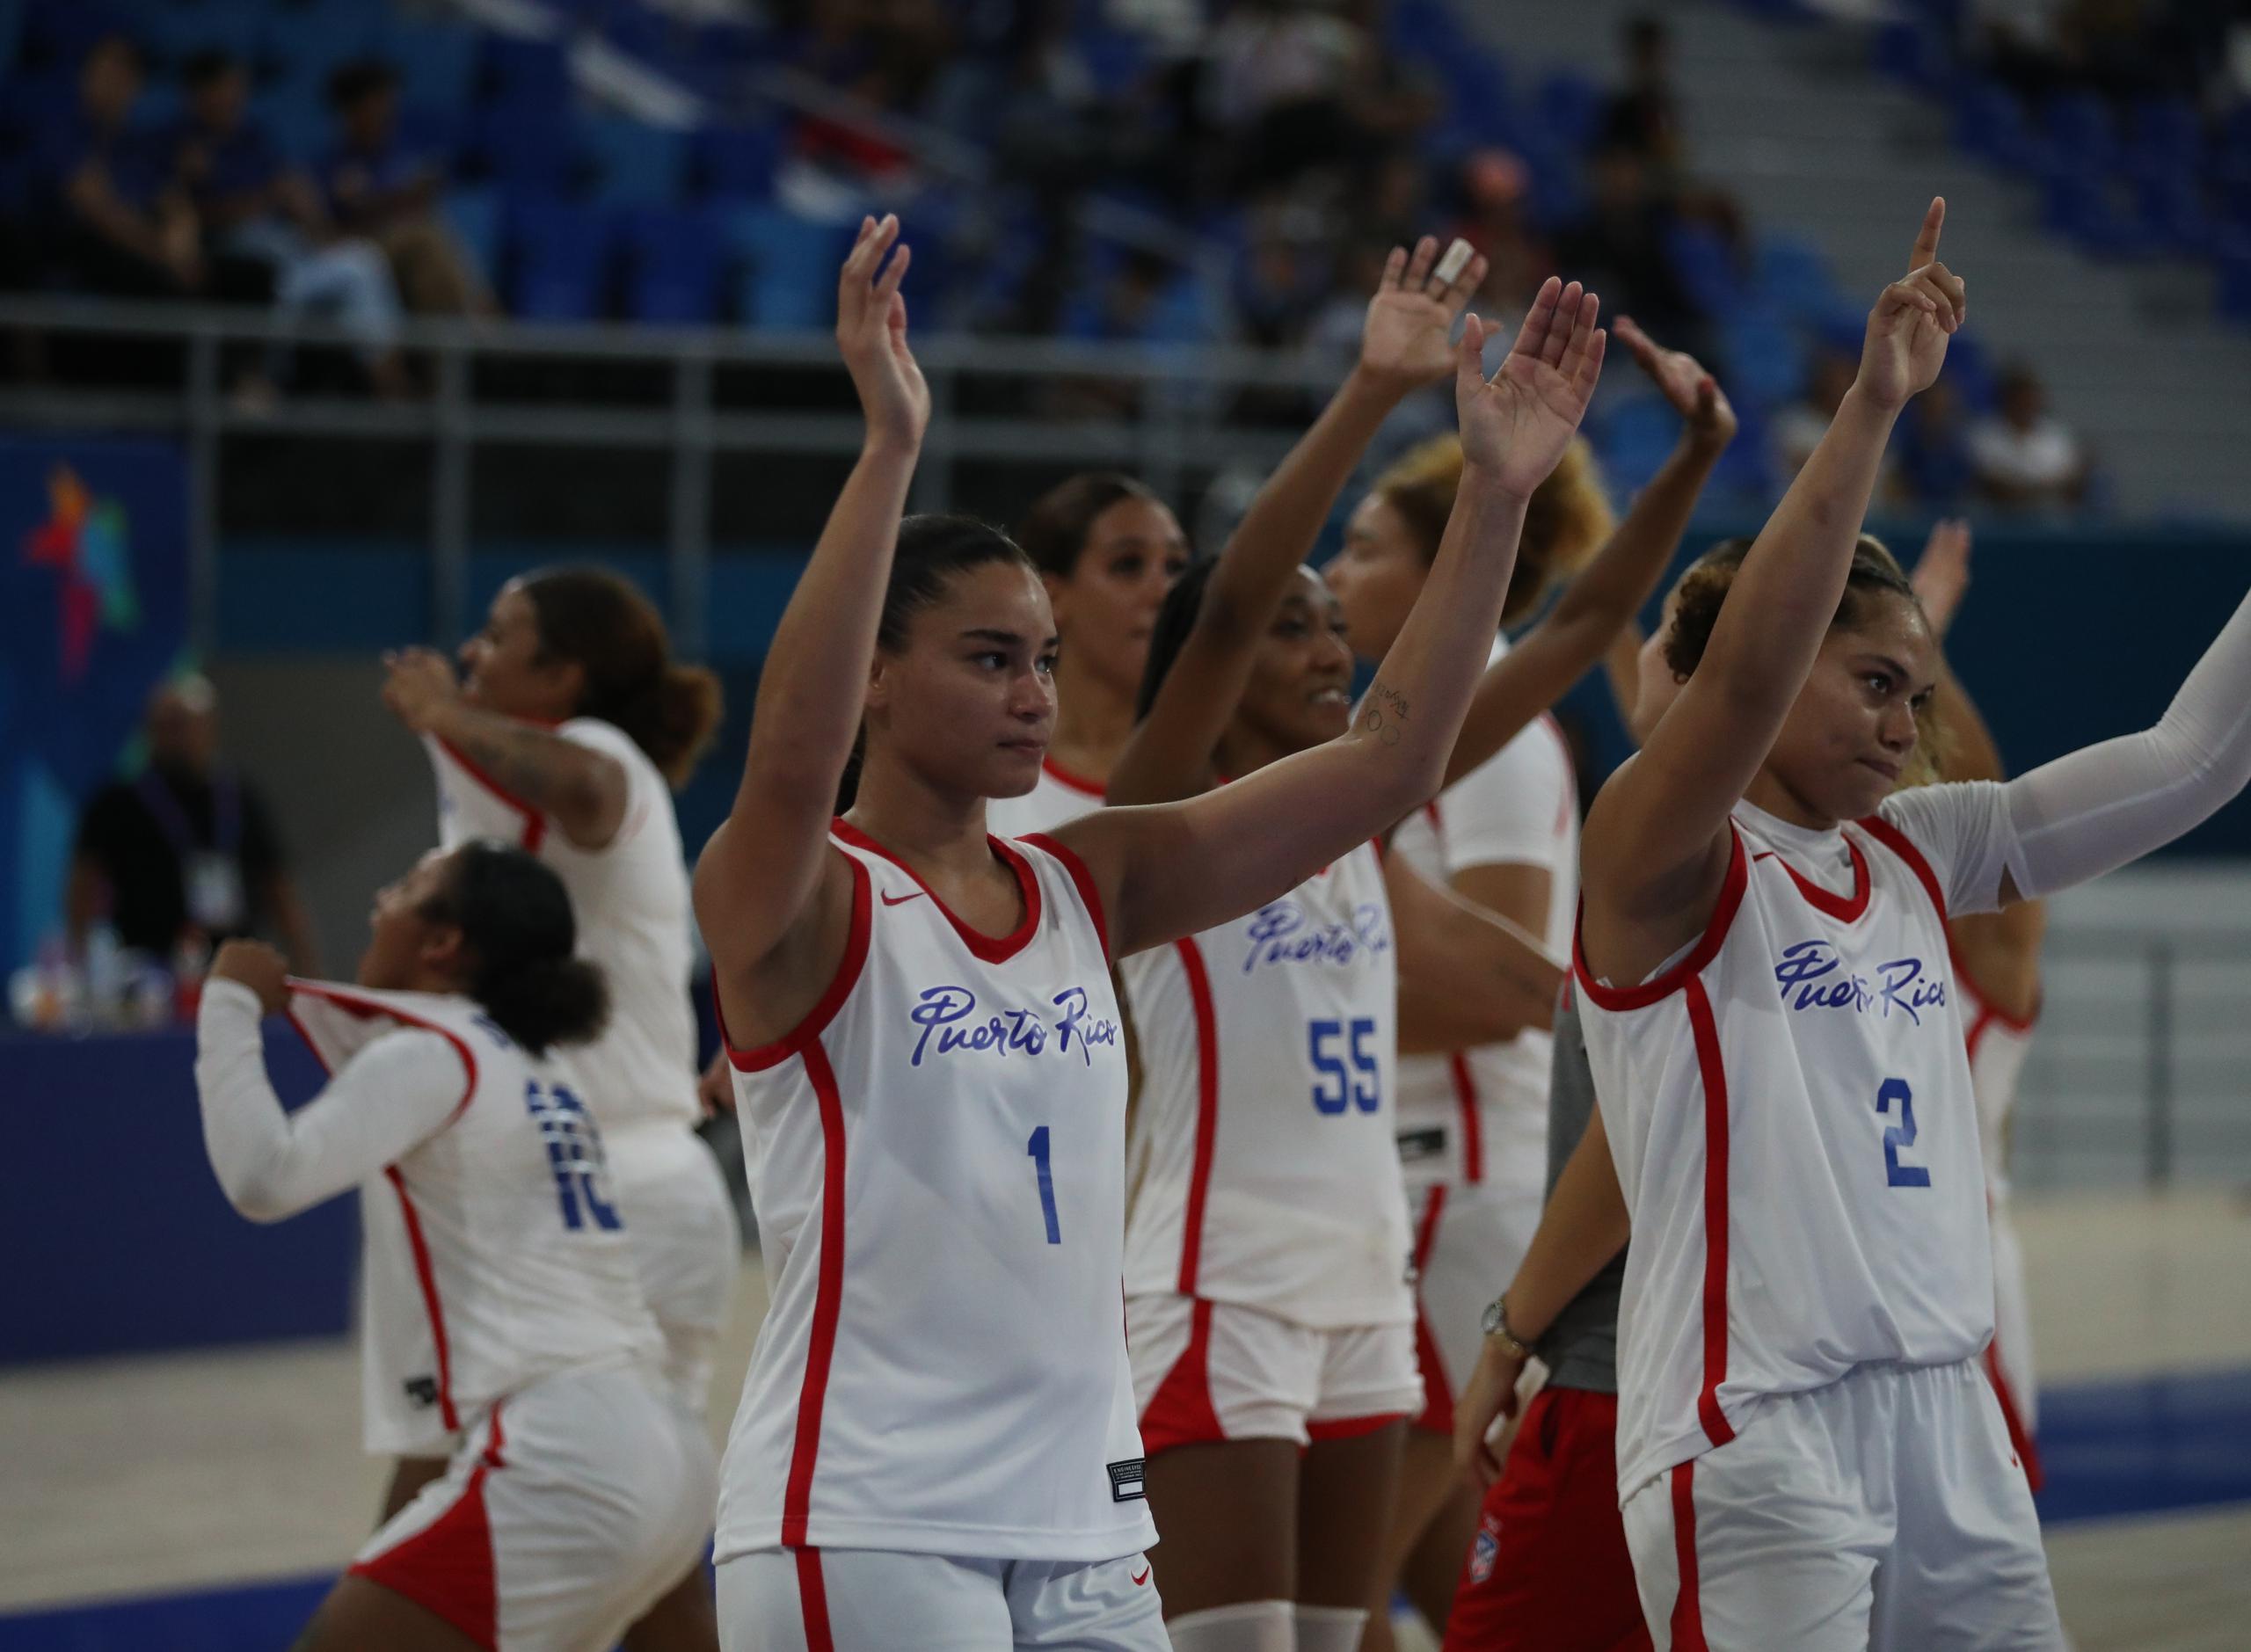 Tras ganar en la noche del miércoles la medalla de bronce en San Salvador, la delegación de baloncesto parte hoy hacia México para iniciar allí el 1 de julio su participación en el torneo Americup.